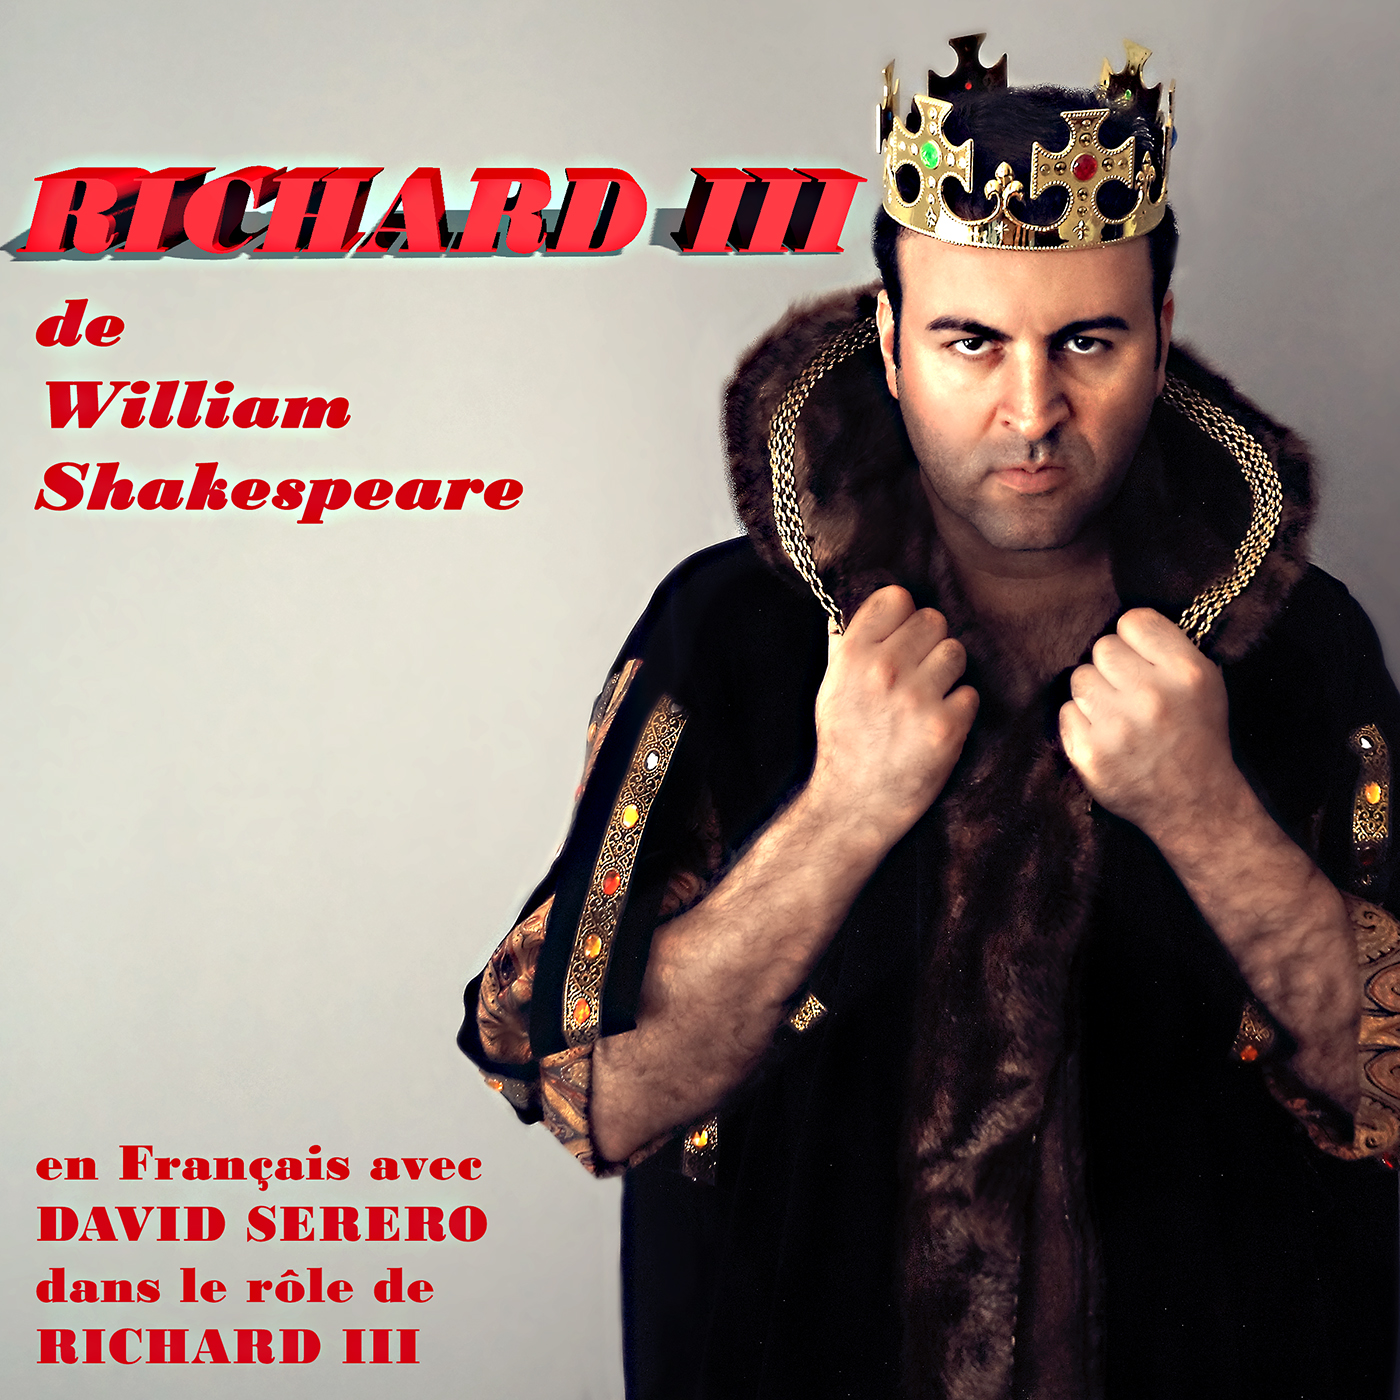 David Serero as Richard III